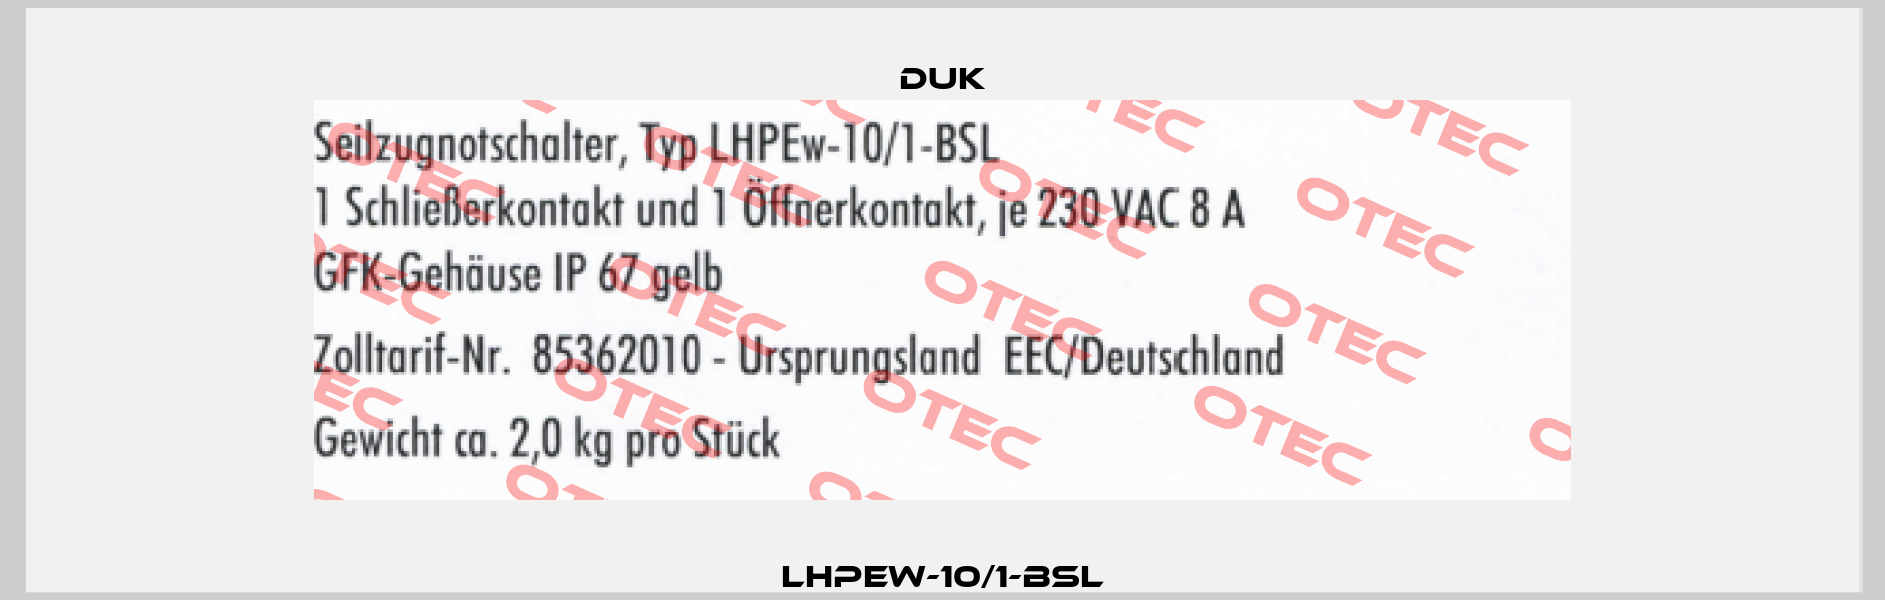 LHPEw-10/1-BSL DUK